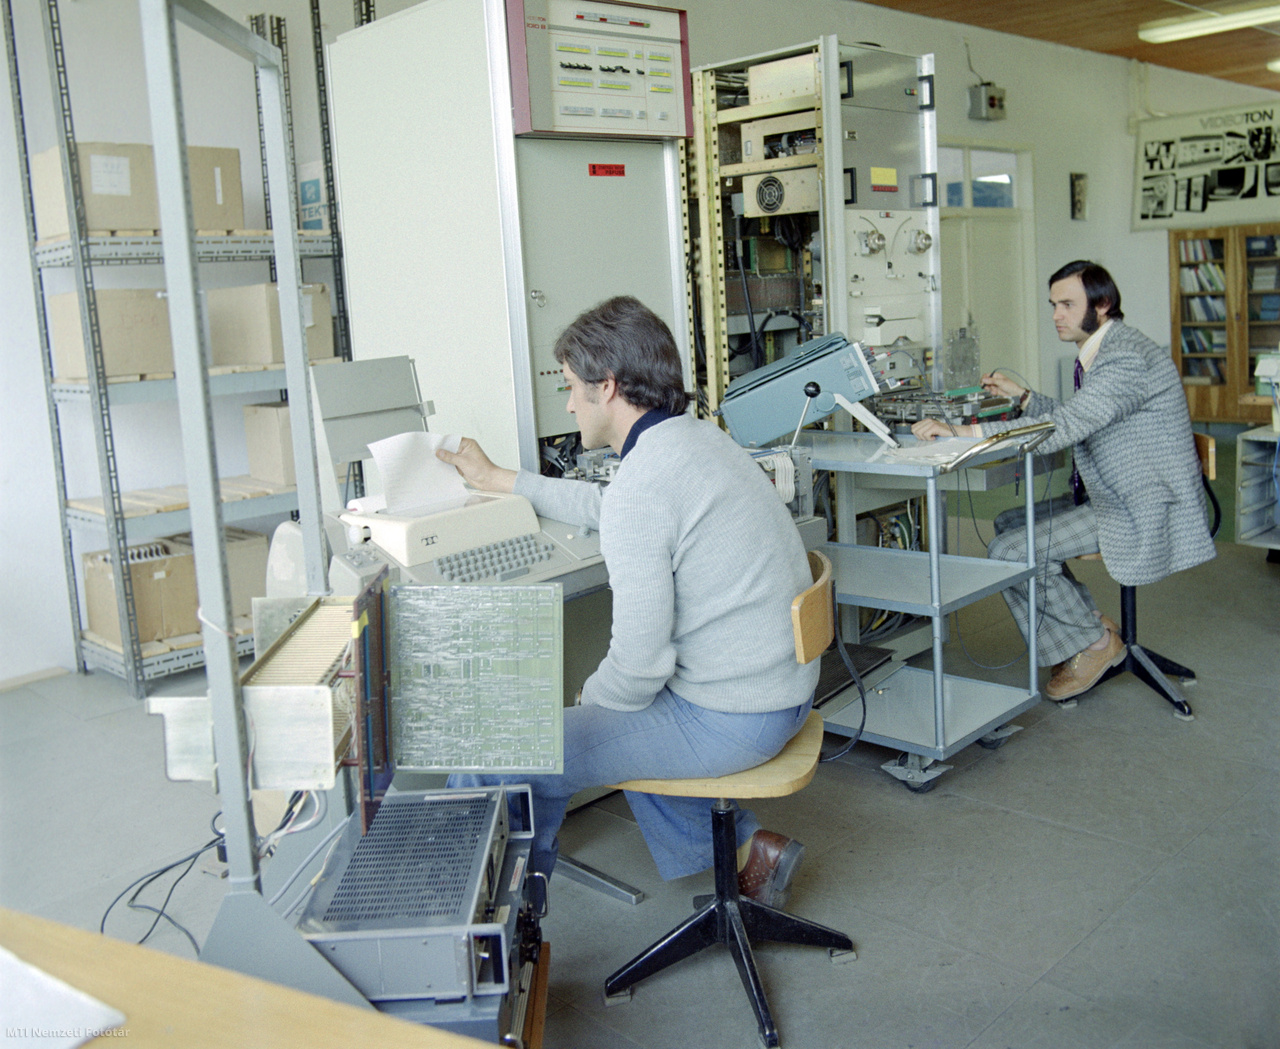 Tab, 1975. május 7. Tetra Tech gyártmányú célszámítógéppel ellenőrzik a dolgozók a gyártósoron elkészült memóriakártyákat a Videoton Számítástechnikai Gyár tabi gyáregységében.